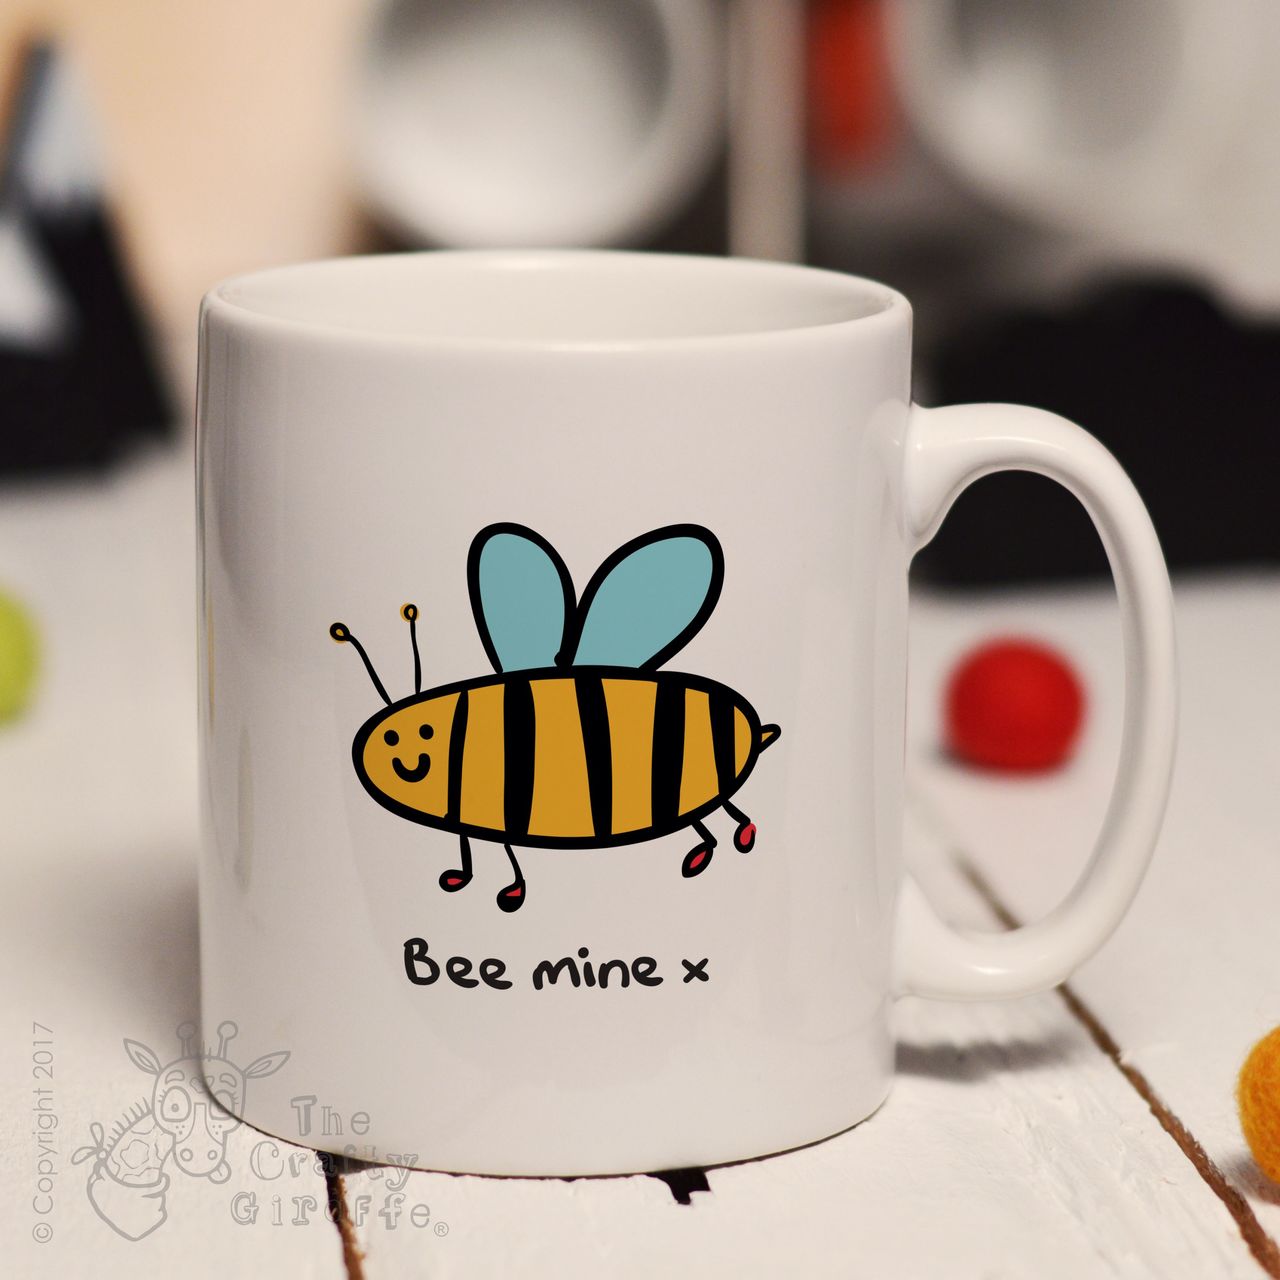 Bee mine mug